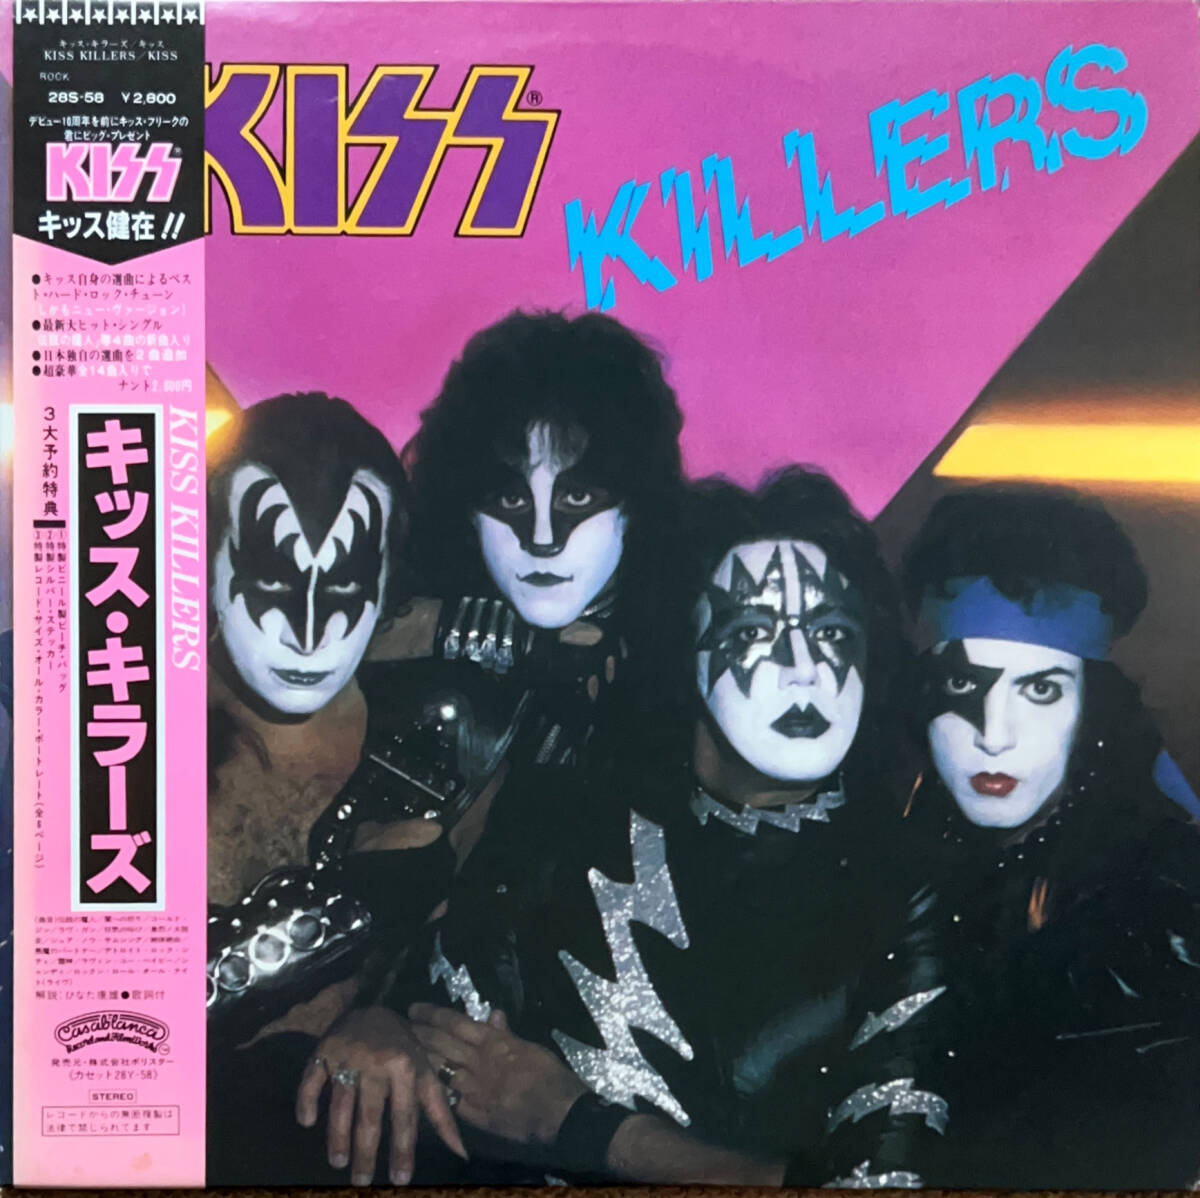 KISS キッス / KILLERS キラーズ / LP レコード 帯付き 国内盤 28S-58 初期予約特典カラーポートレイト付 美盤_画像1